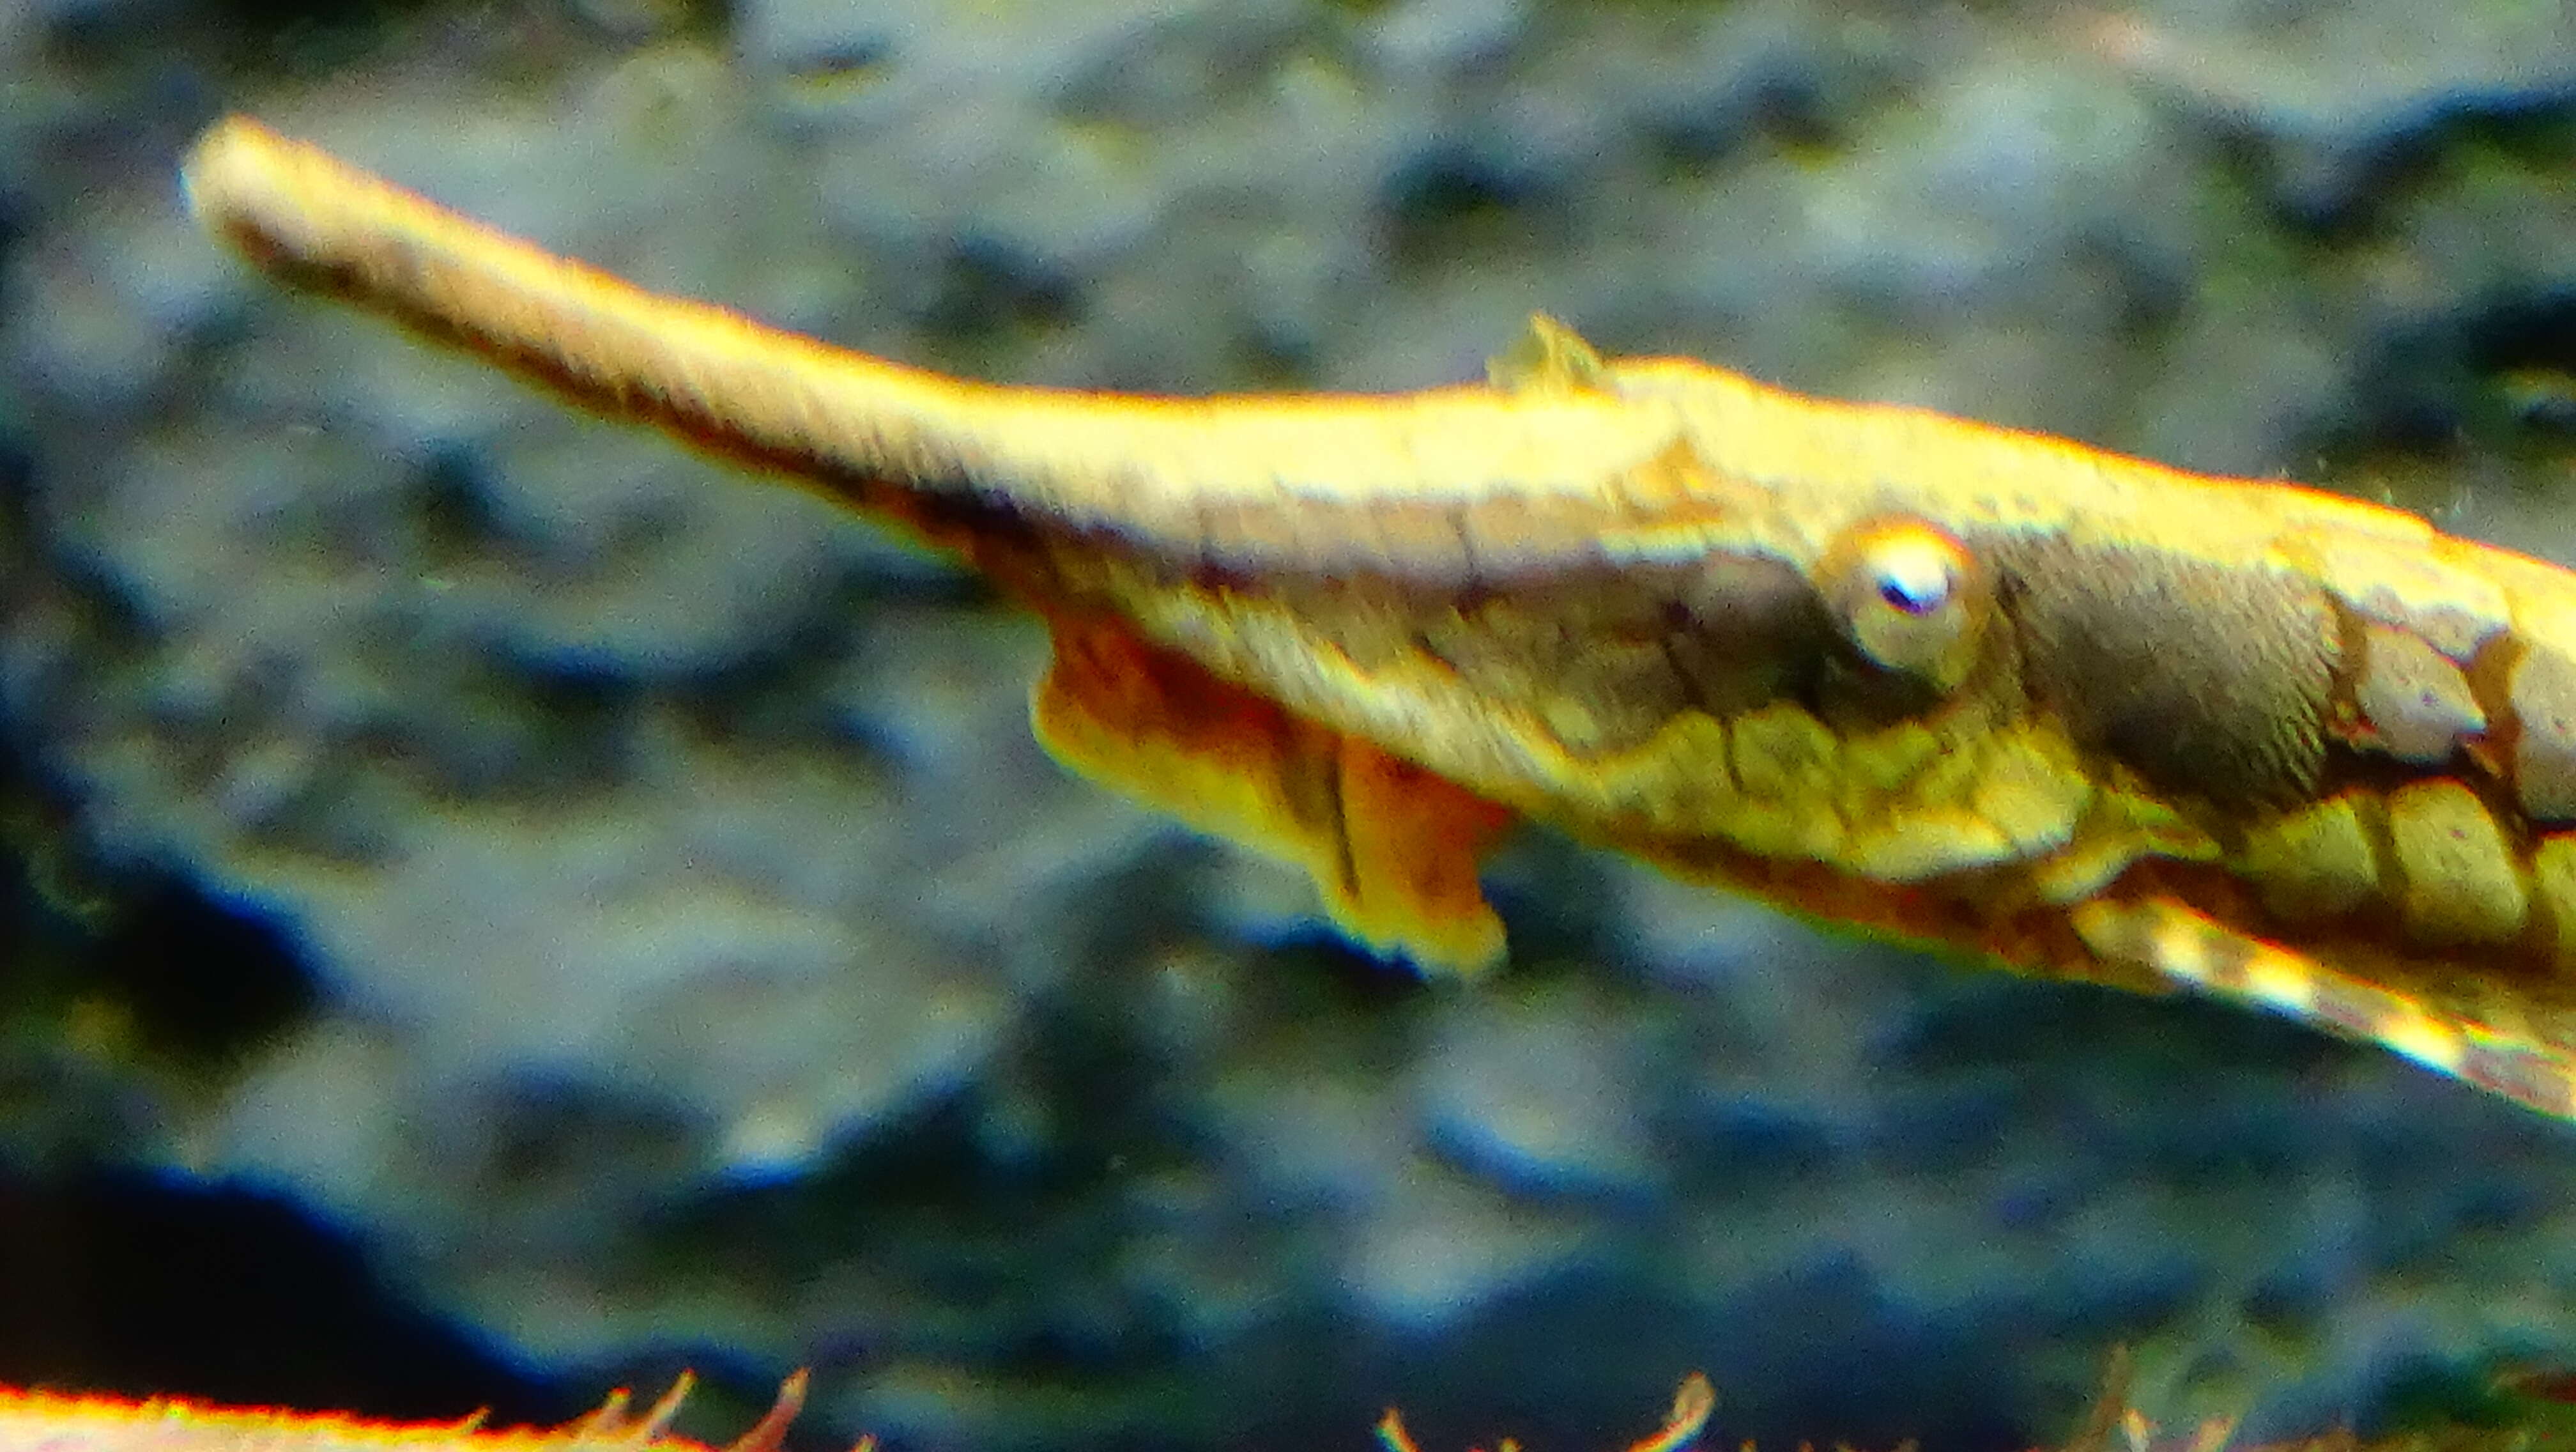 Image of Twig catfish